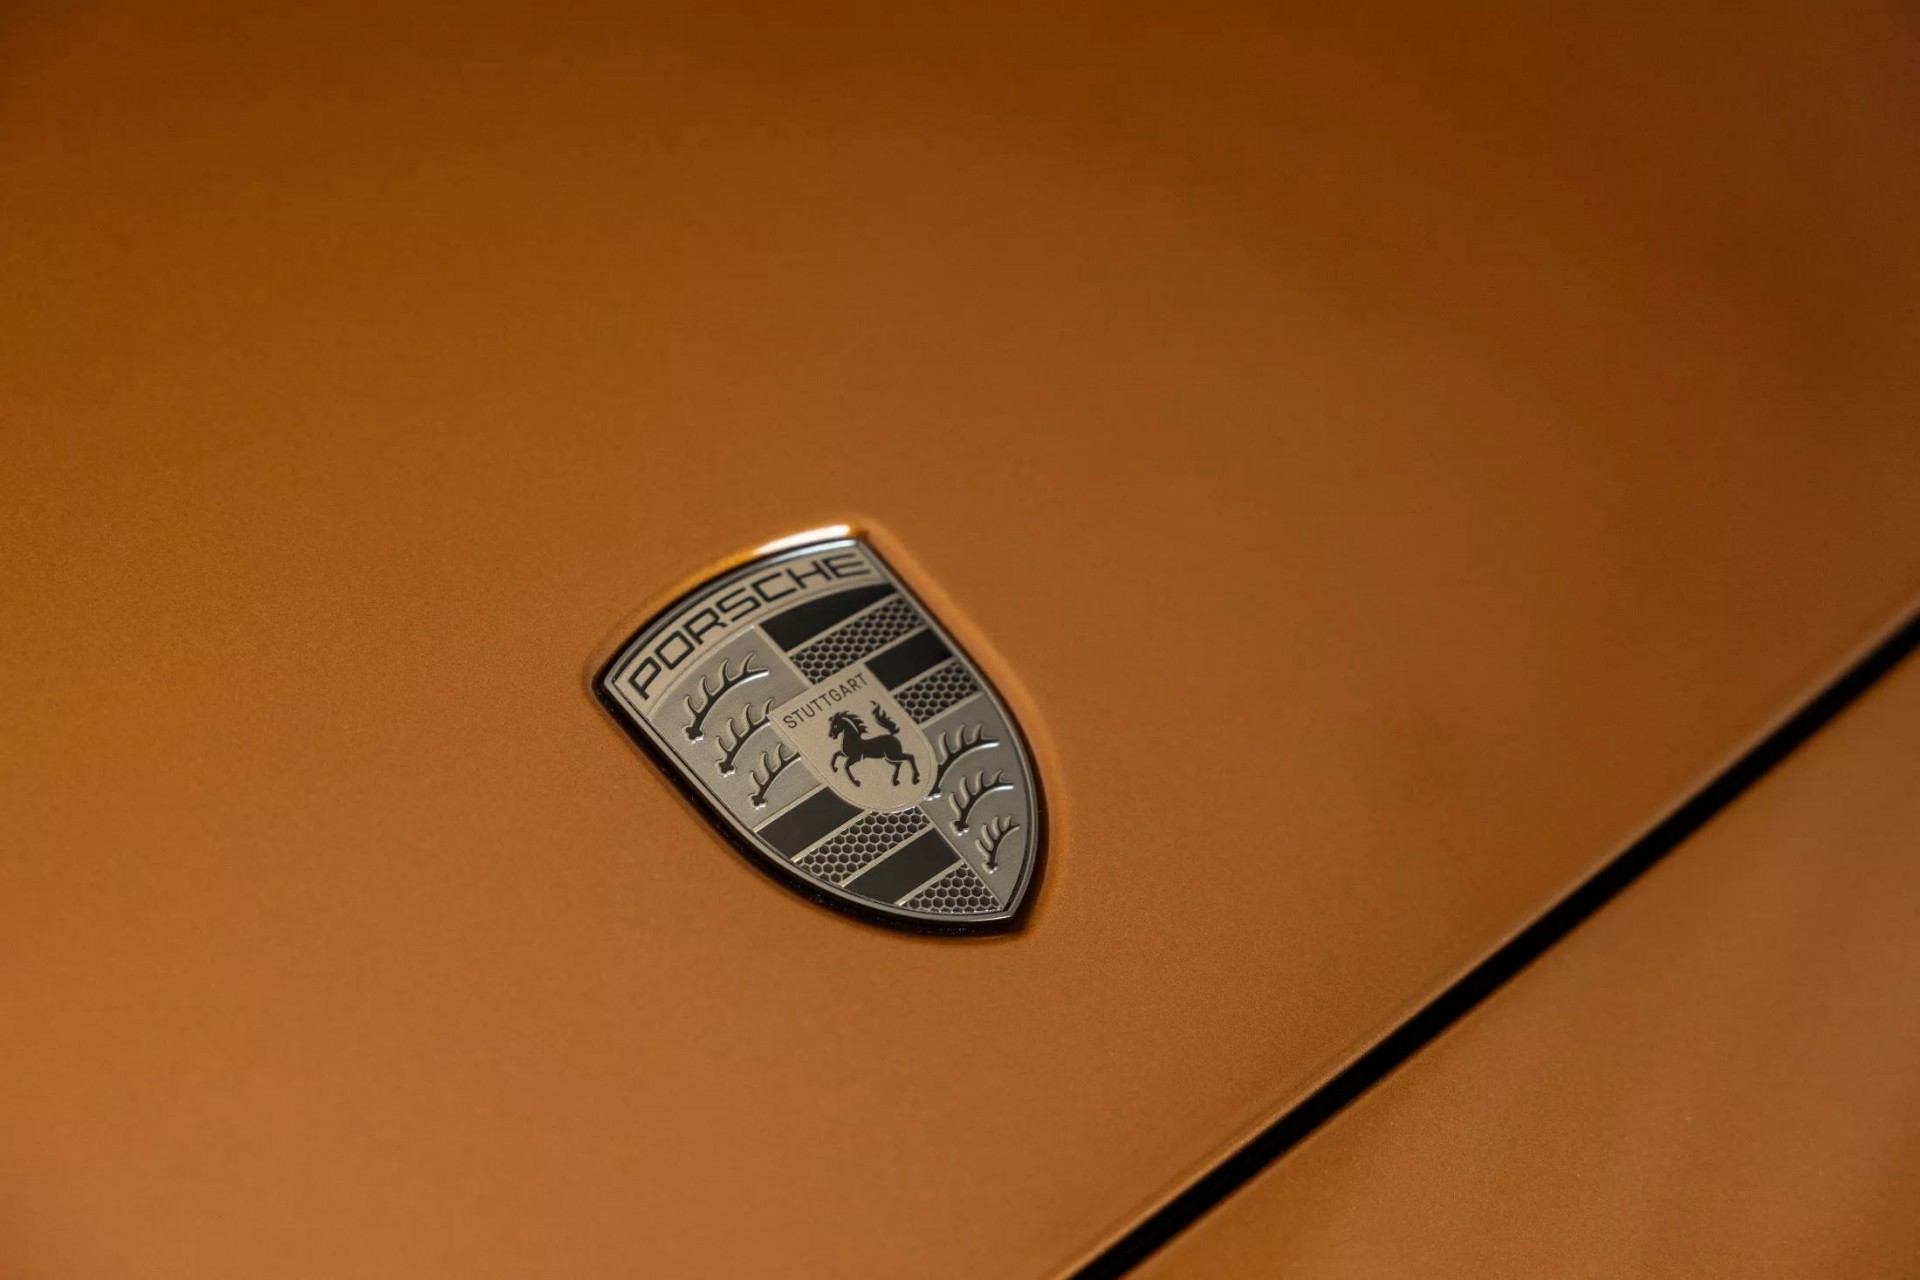 Porsche Panamera thế hệ mới trình làng với hàng loạt công nghệ mới